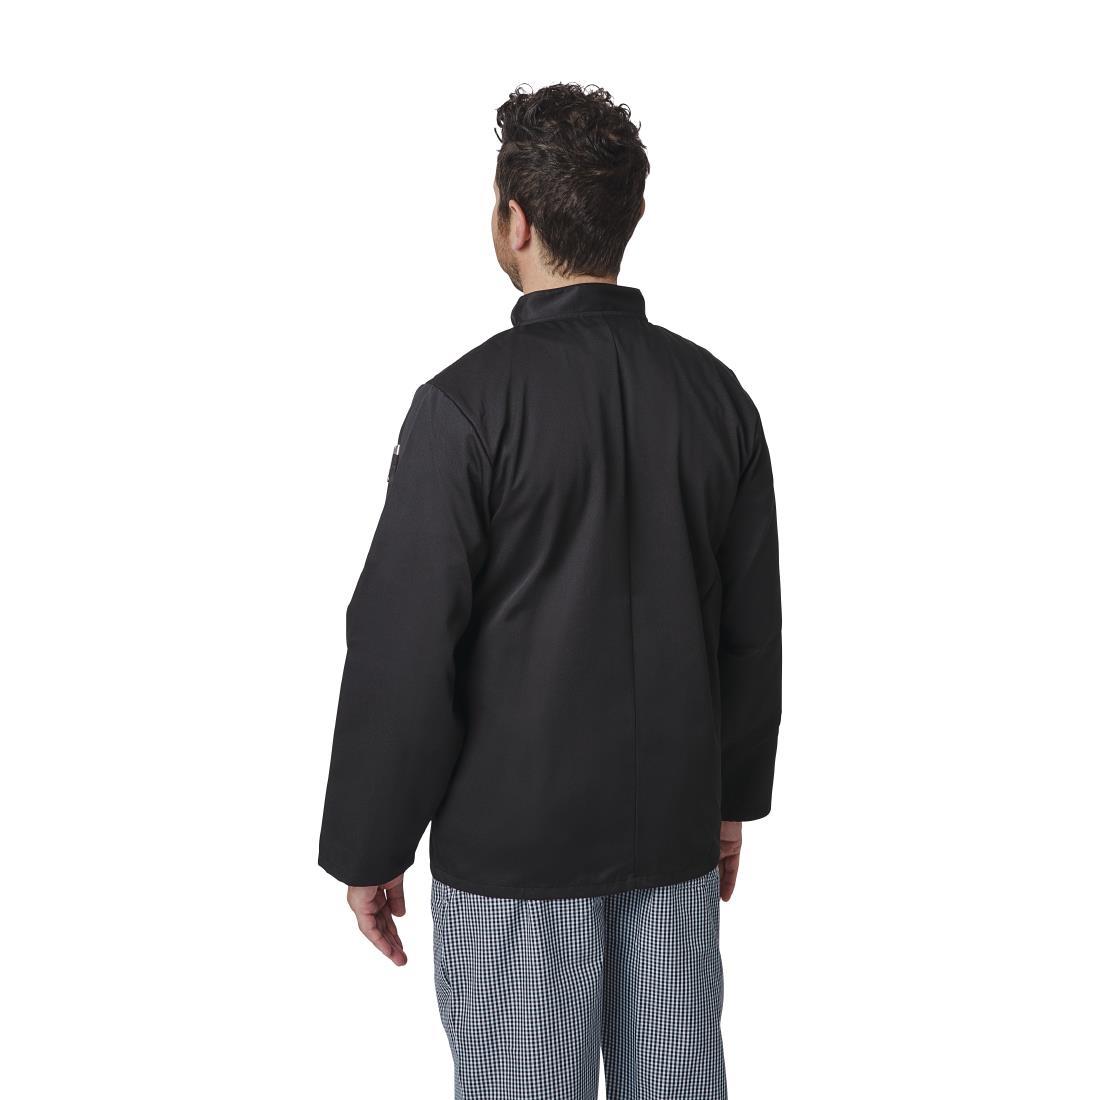 Whites Vegas Unisex Chefs Jacket Long Sleeve Black 5XL - A438-5XL  - 6